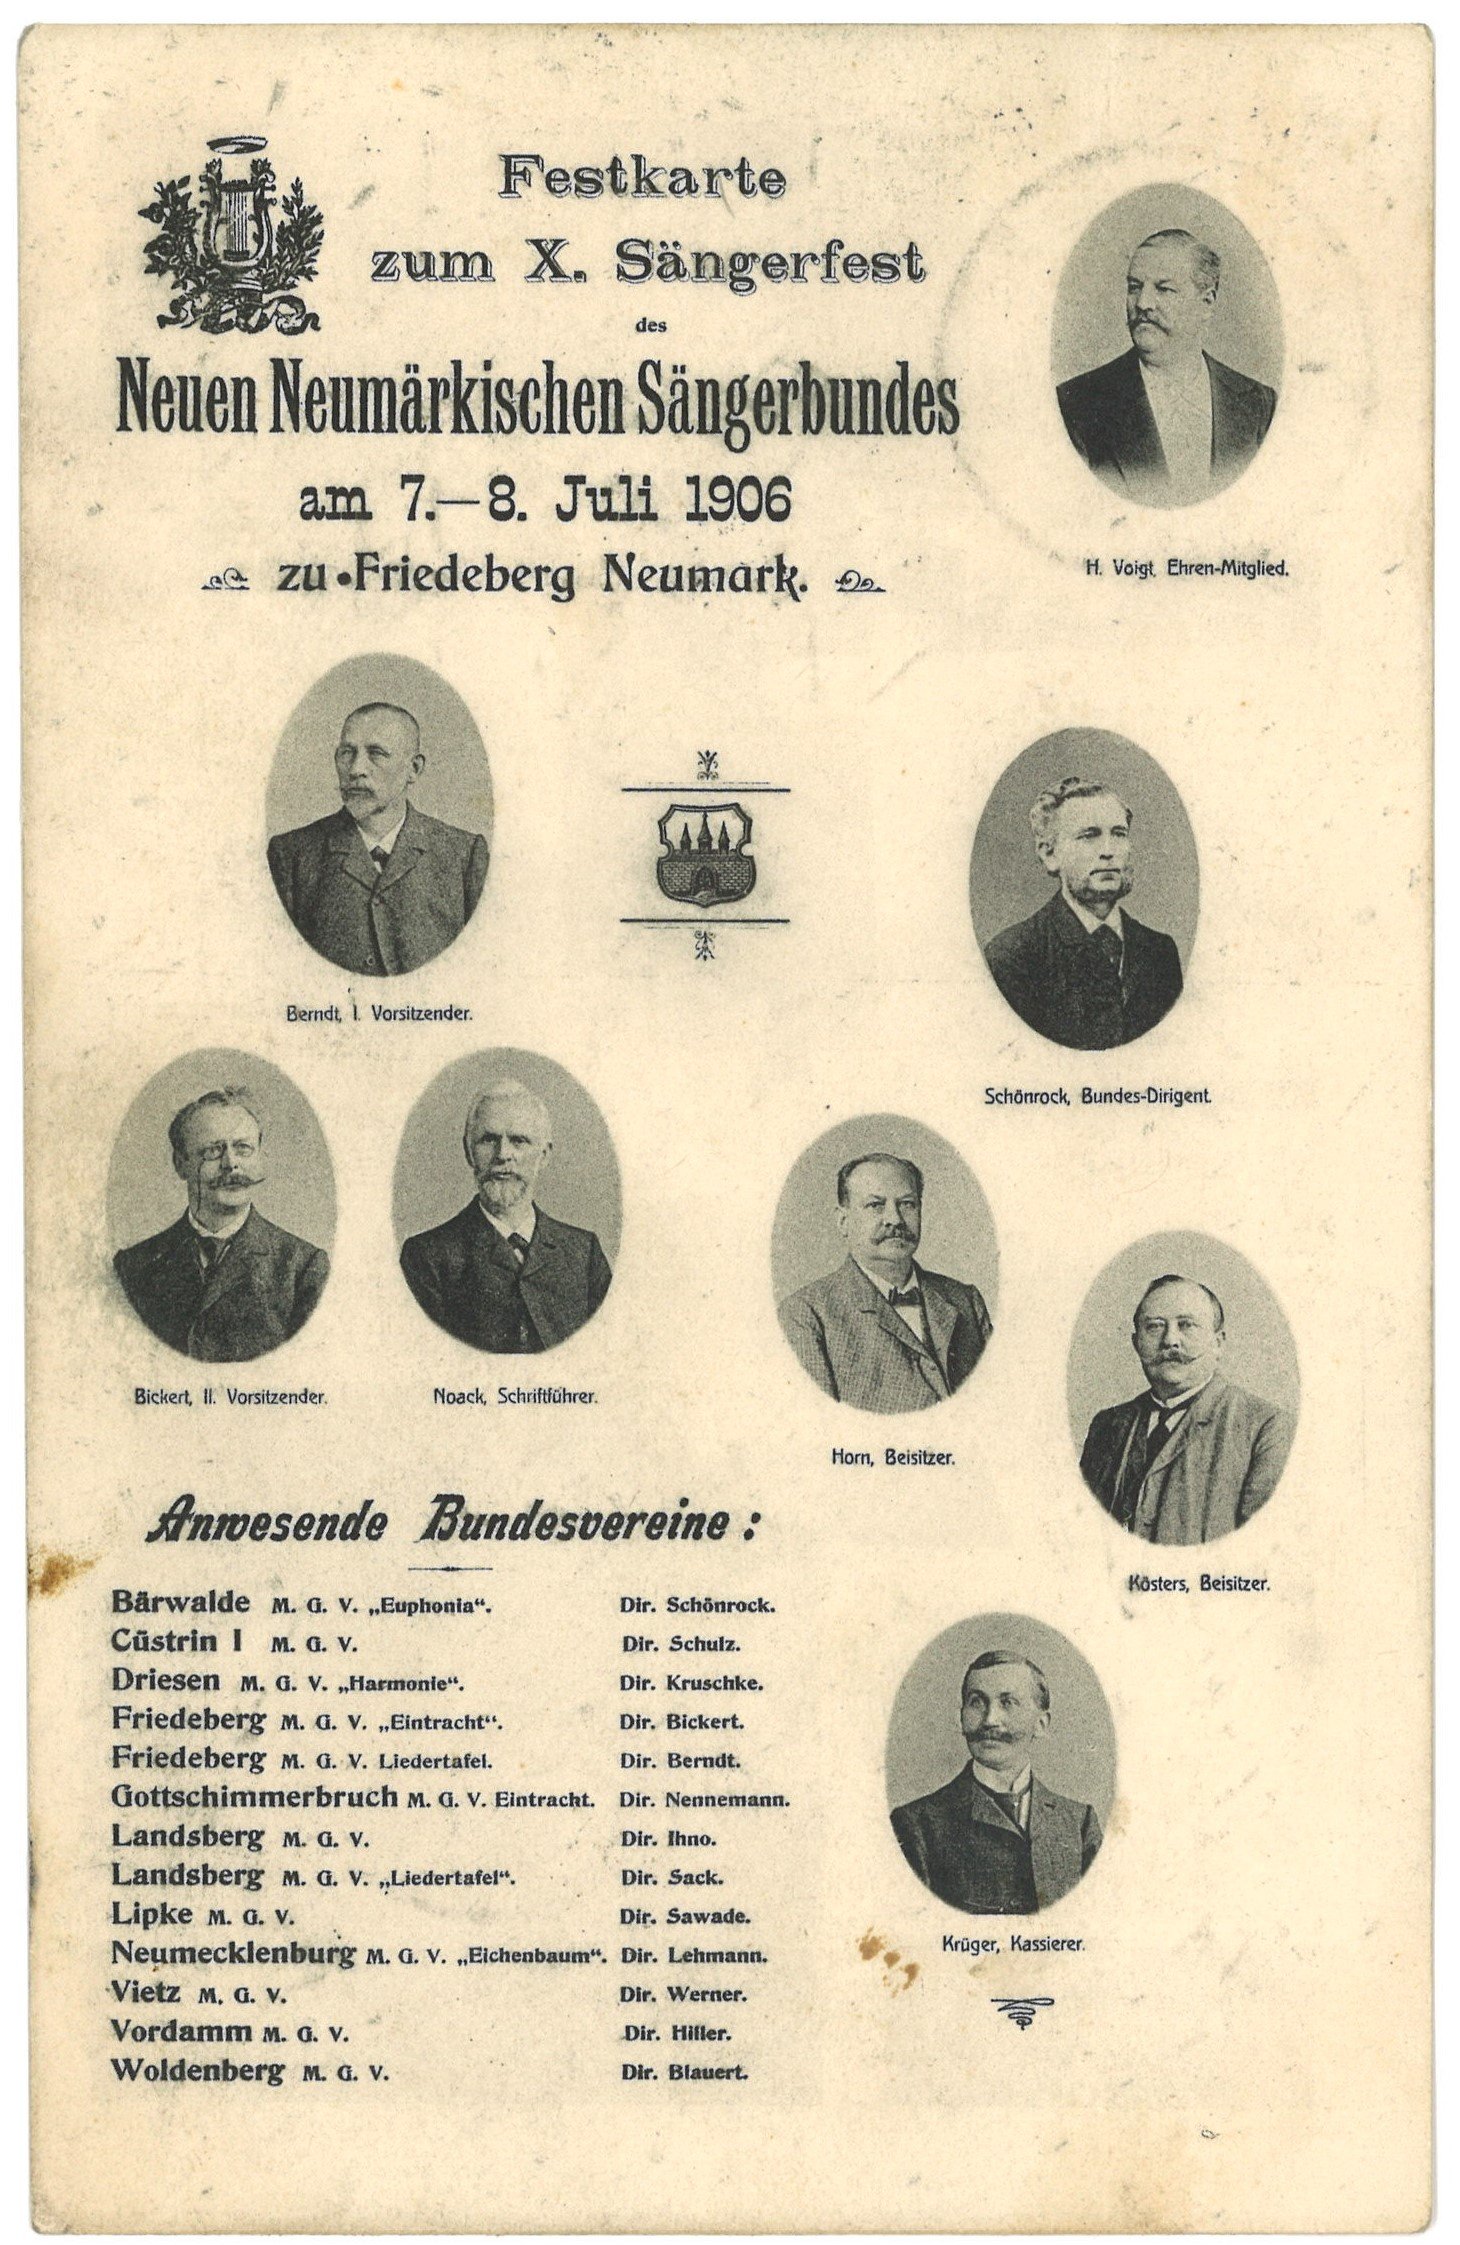 Festkarte zum X. Sängerfest des Neuen Neumärkschen Sängebundes 1906 in Friedeberg/Nm. [Strzelce Krajeńskie] (Landesgeschichtliche Vereinigung für die Mark Brandenburg e.V., Archiv CC BY)